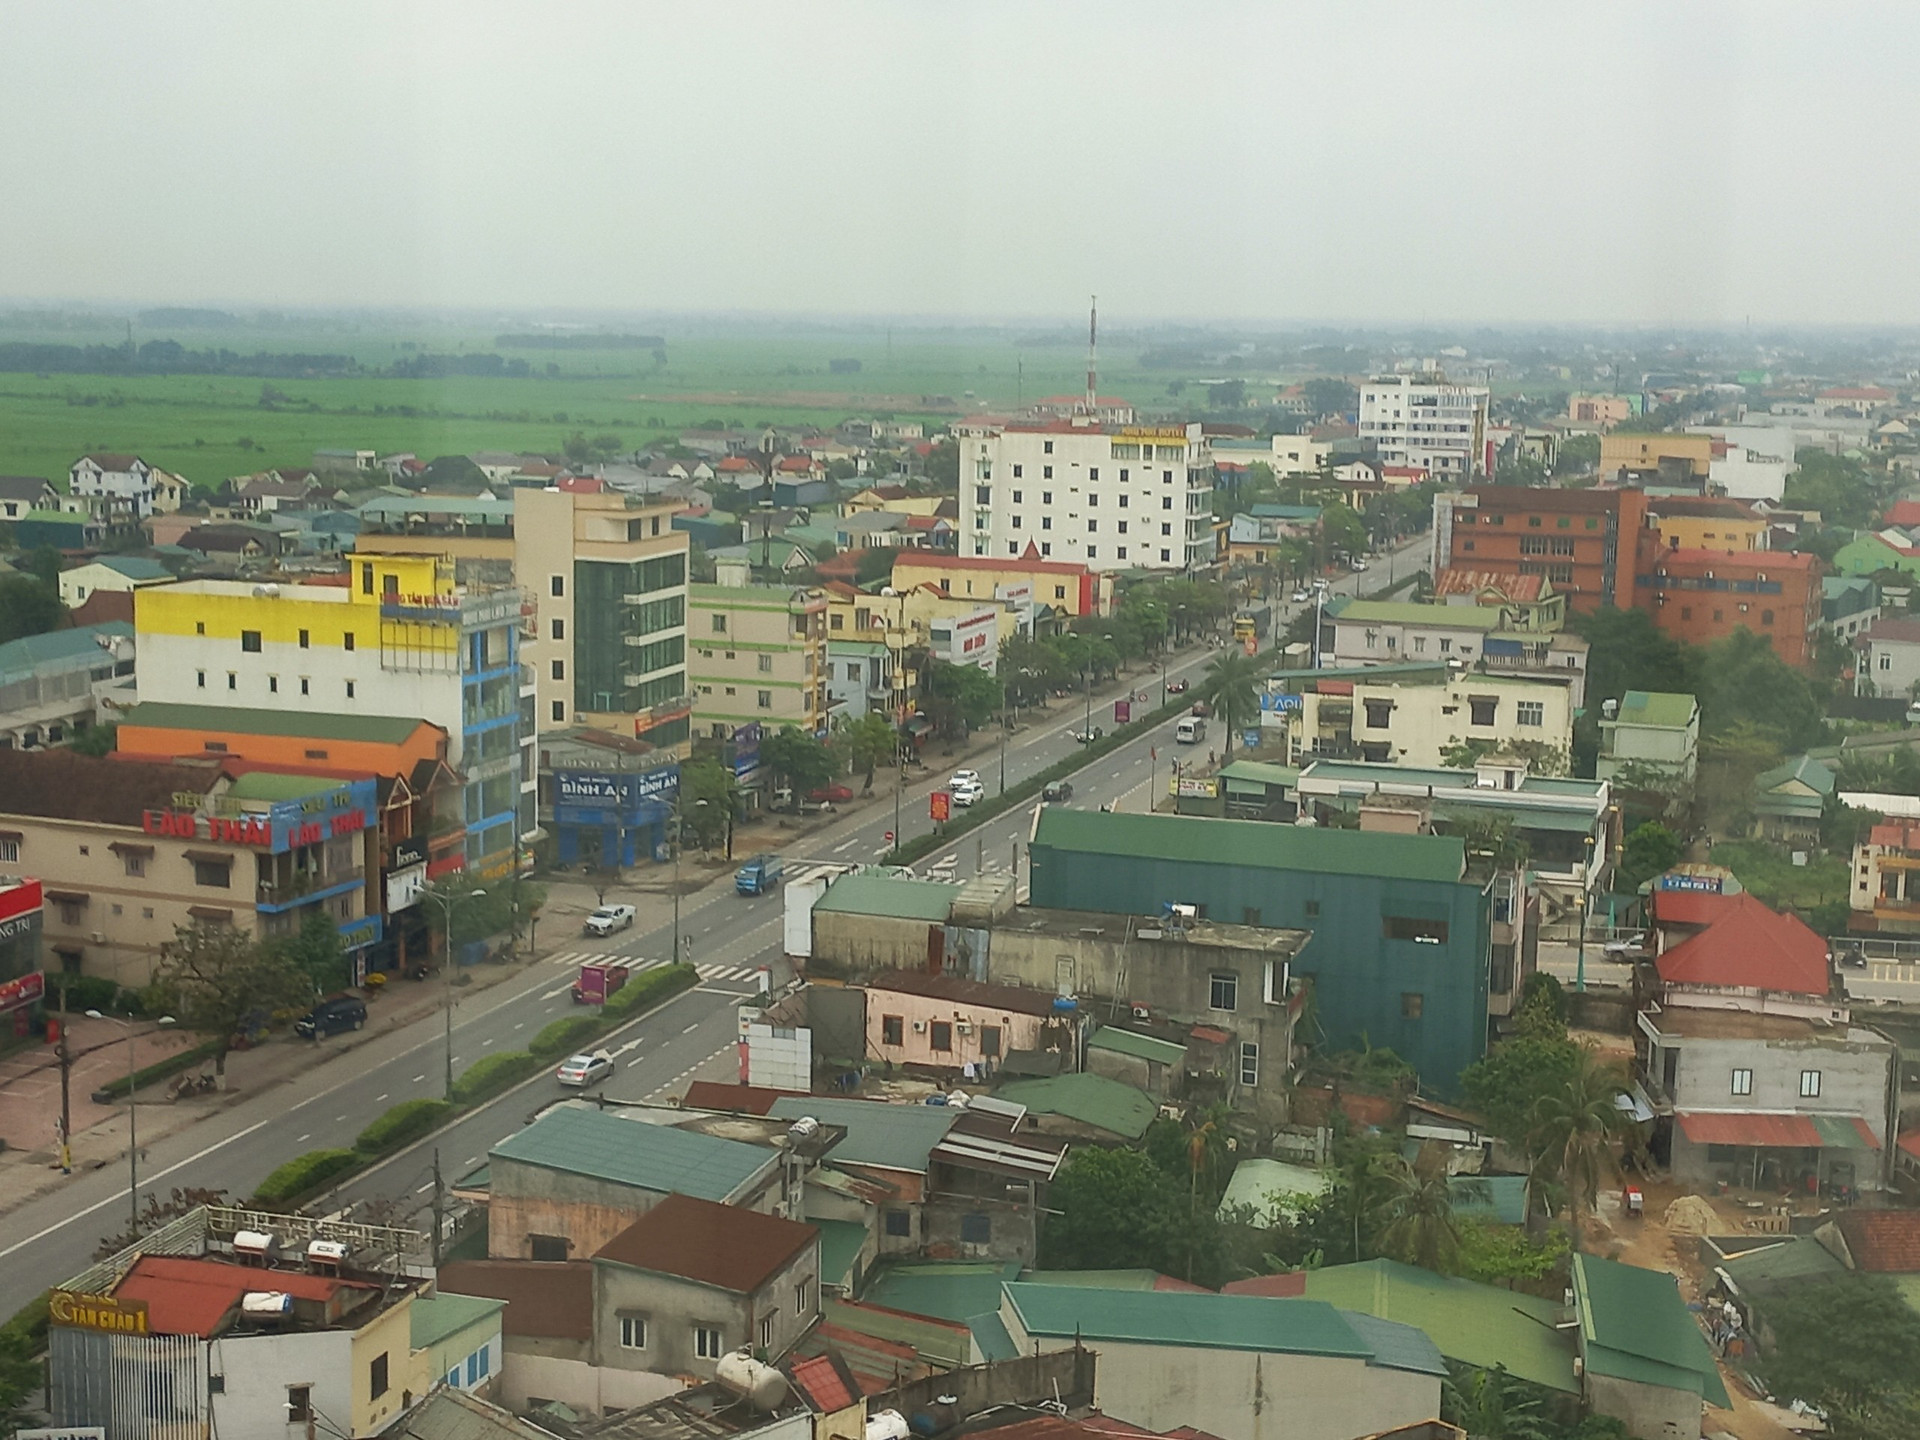 UBND tỉnh Quảng Trị vừa ban hành văn bản về việc đánh giá và kiểm soát nguy cơ xảy ra “bong bóng” bất động sản trên địa bàn.